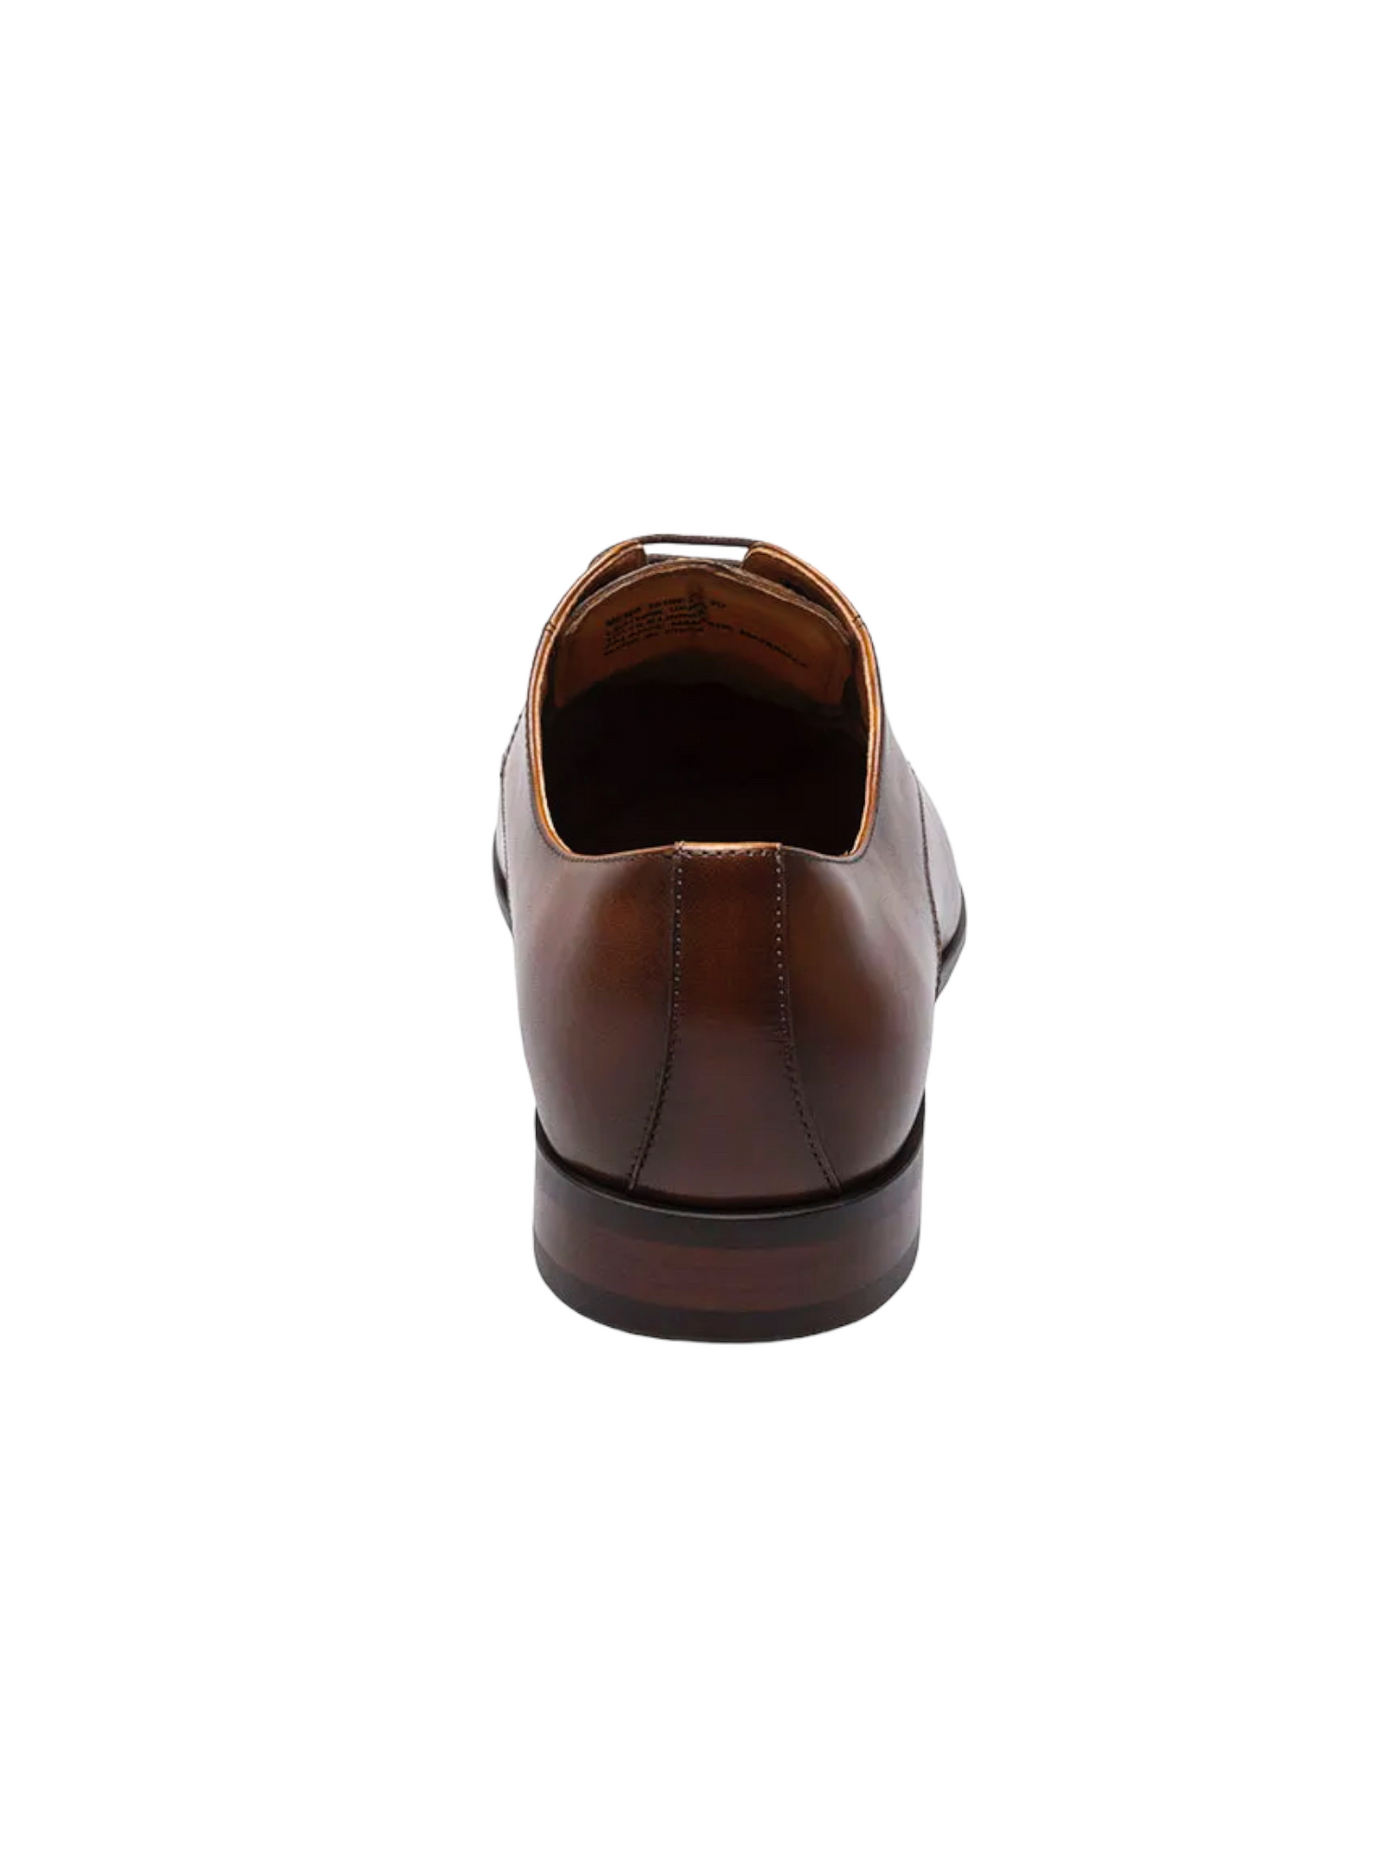 Chaussures en cuir cognac Postino